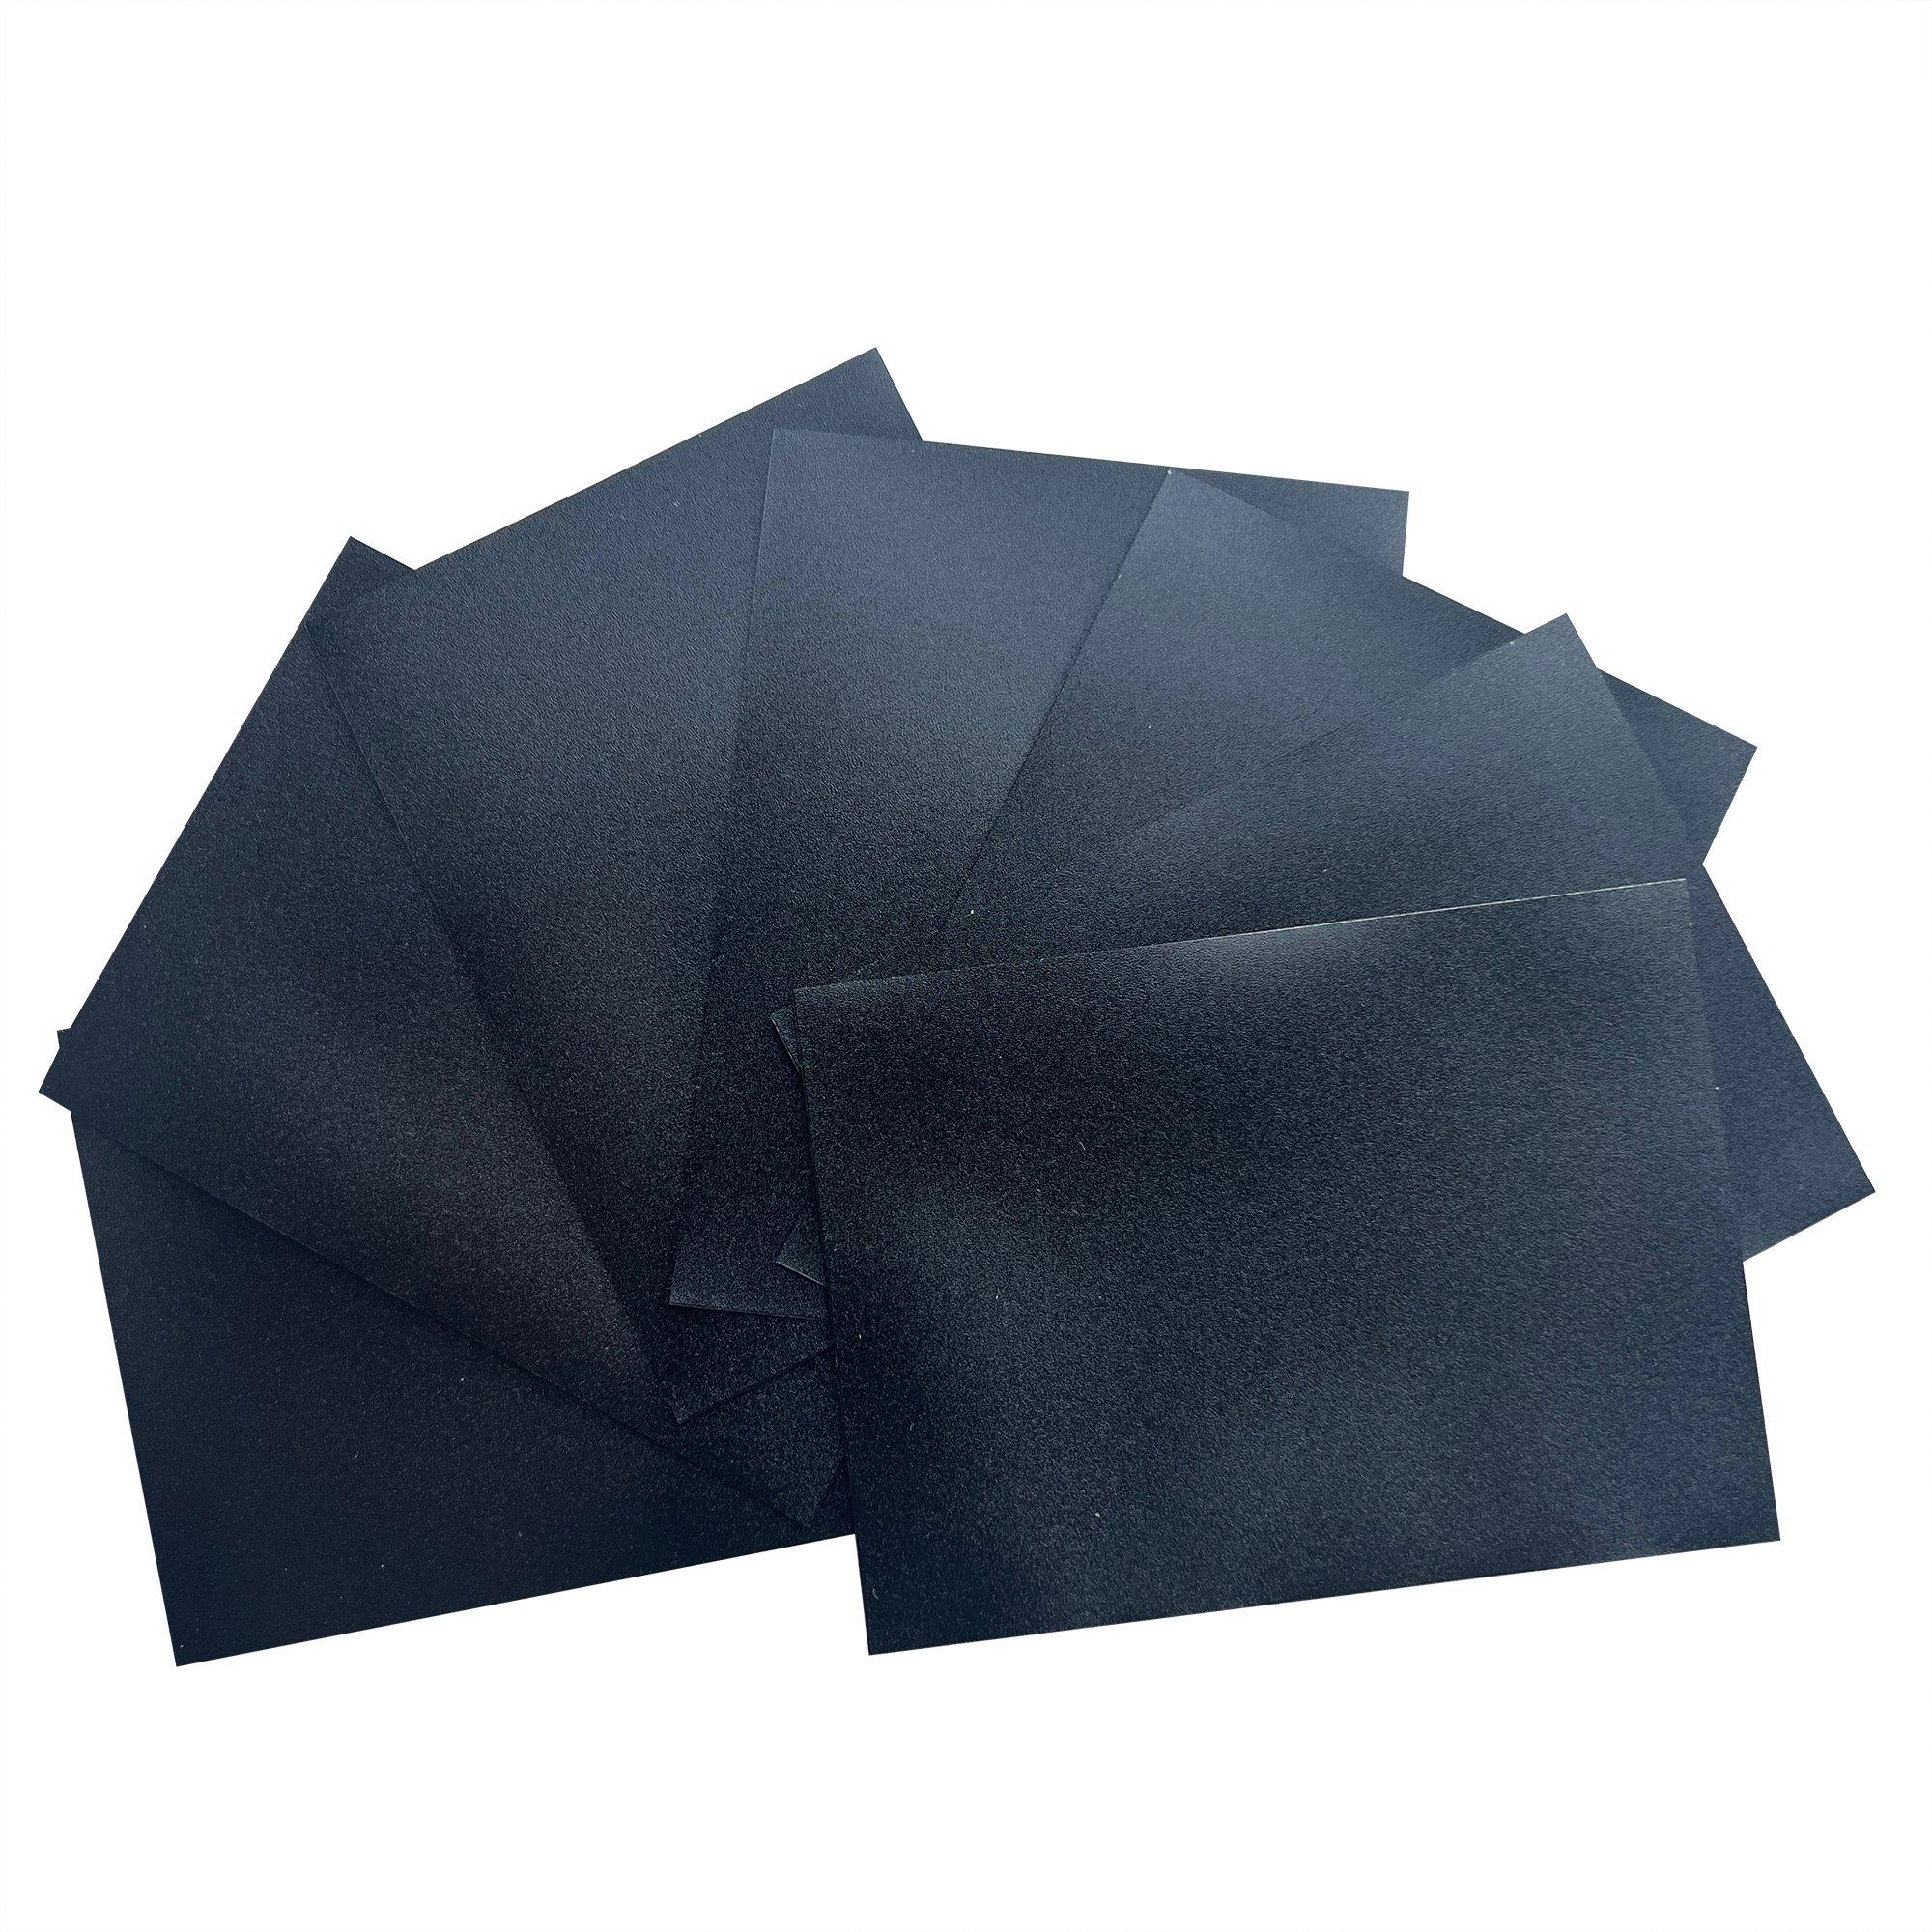 Biogenik Trading Card Protector Sleeves Black 100-Pack - Black